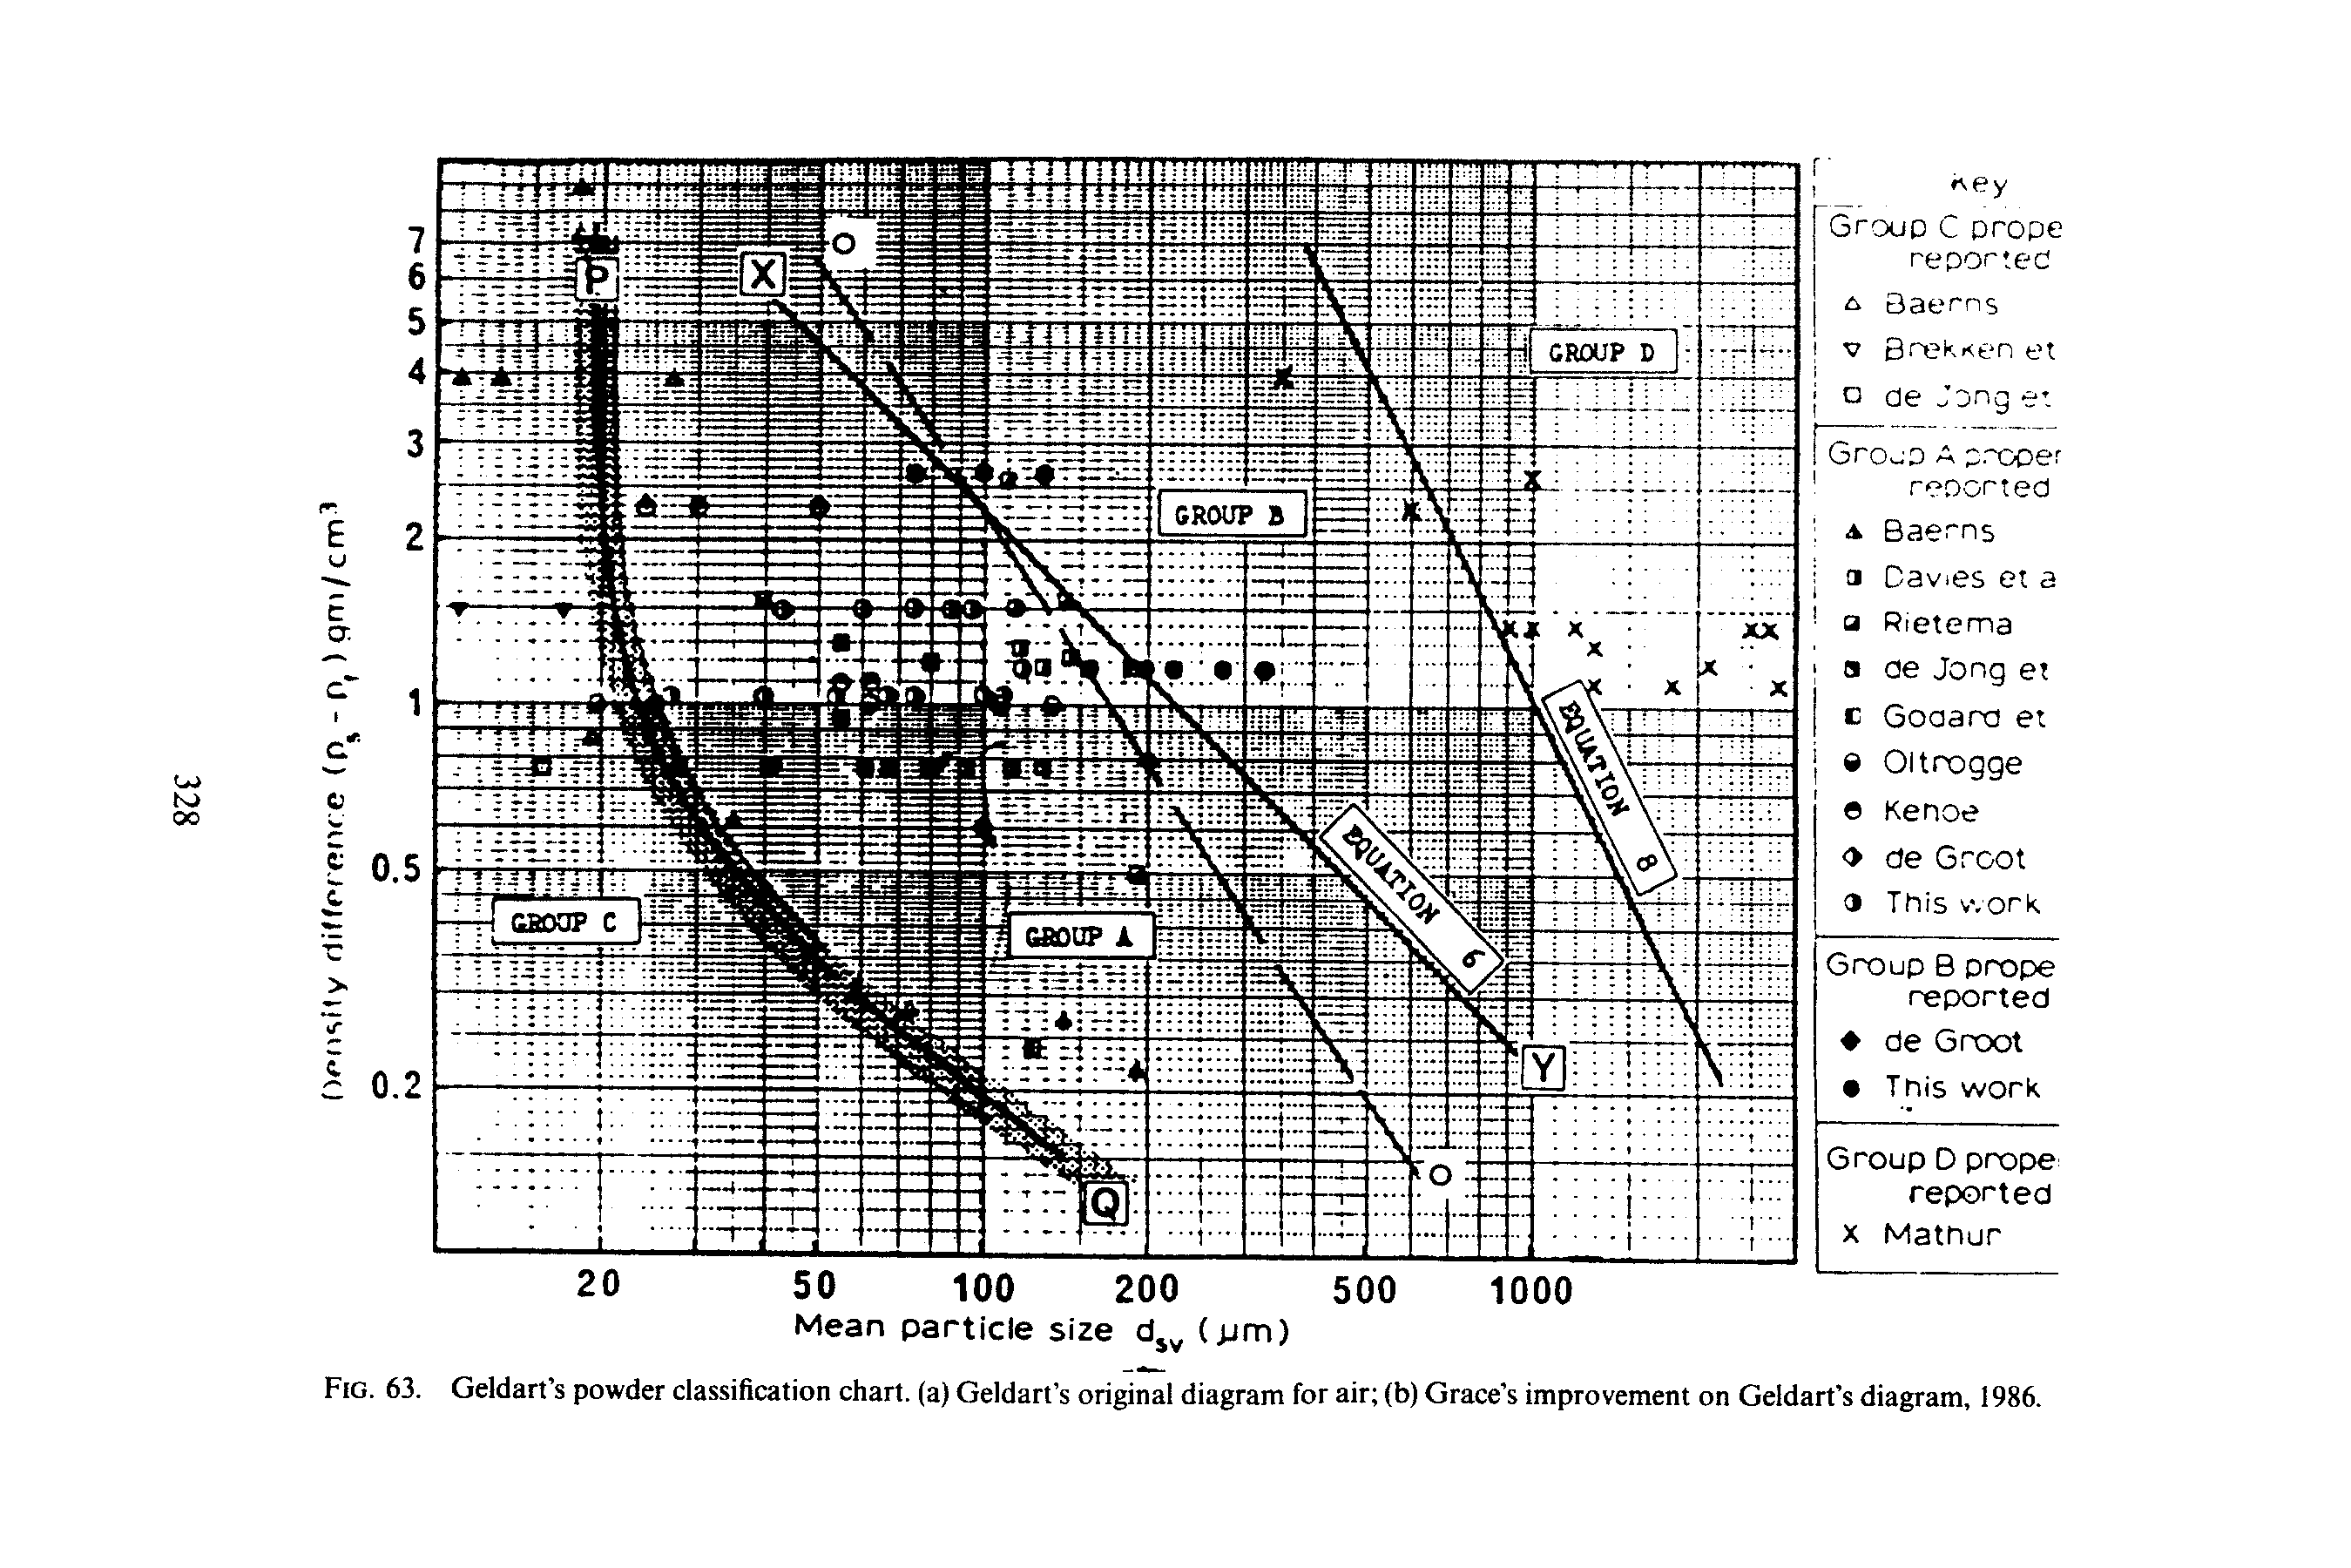 Fig. 63. Geldart s powder classification chart, (a) Geldart s original diagram for air (b) Grace s improvement on Geidart s diagram, 1986.